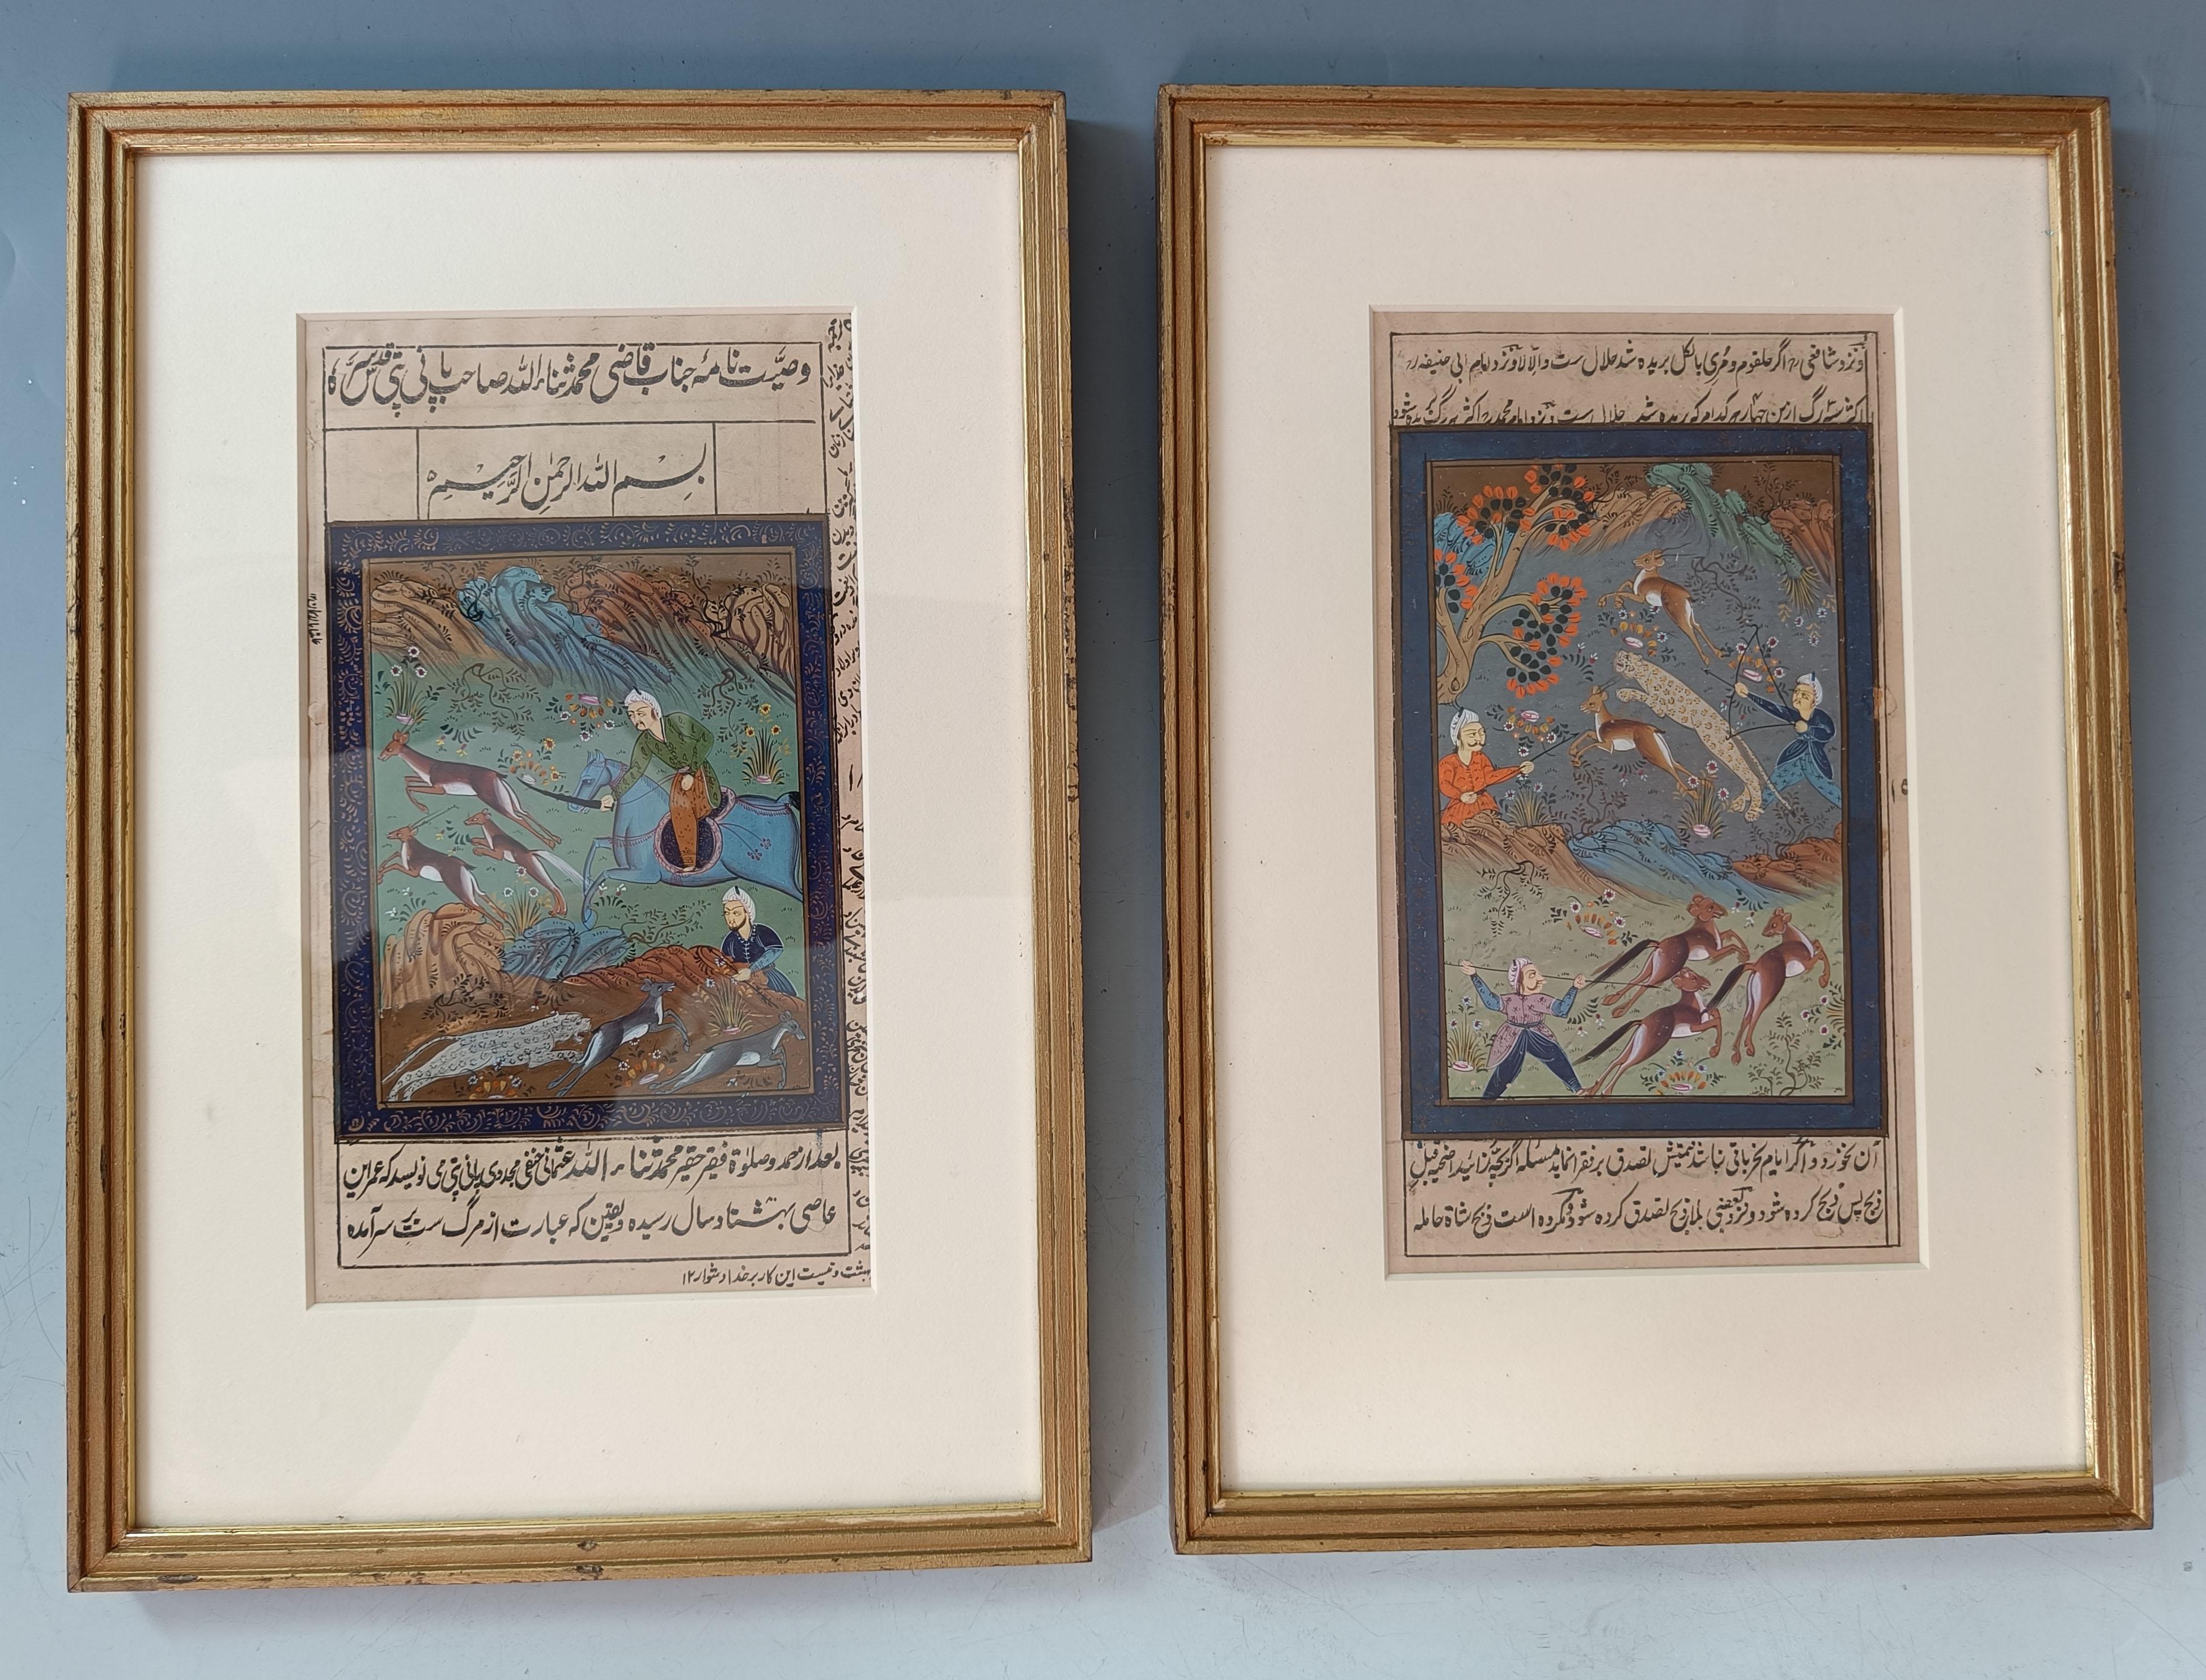 Peintures à la gouache de style indo-persan moghol  de scènes de chasse 

Paire de peintures miniatures persanes représentant des scènes de chasse  Finement peinte à la gouache avec une belle palette de couleurs, chaque peinture est entourée de